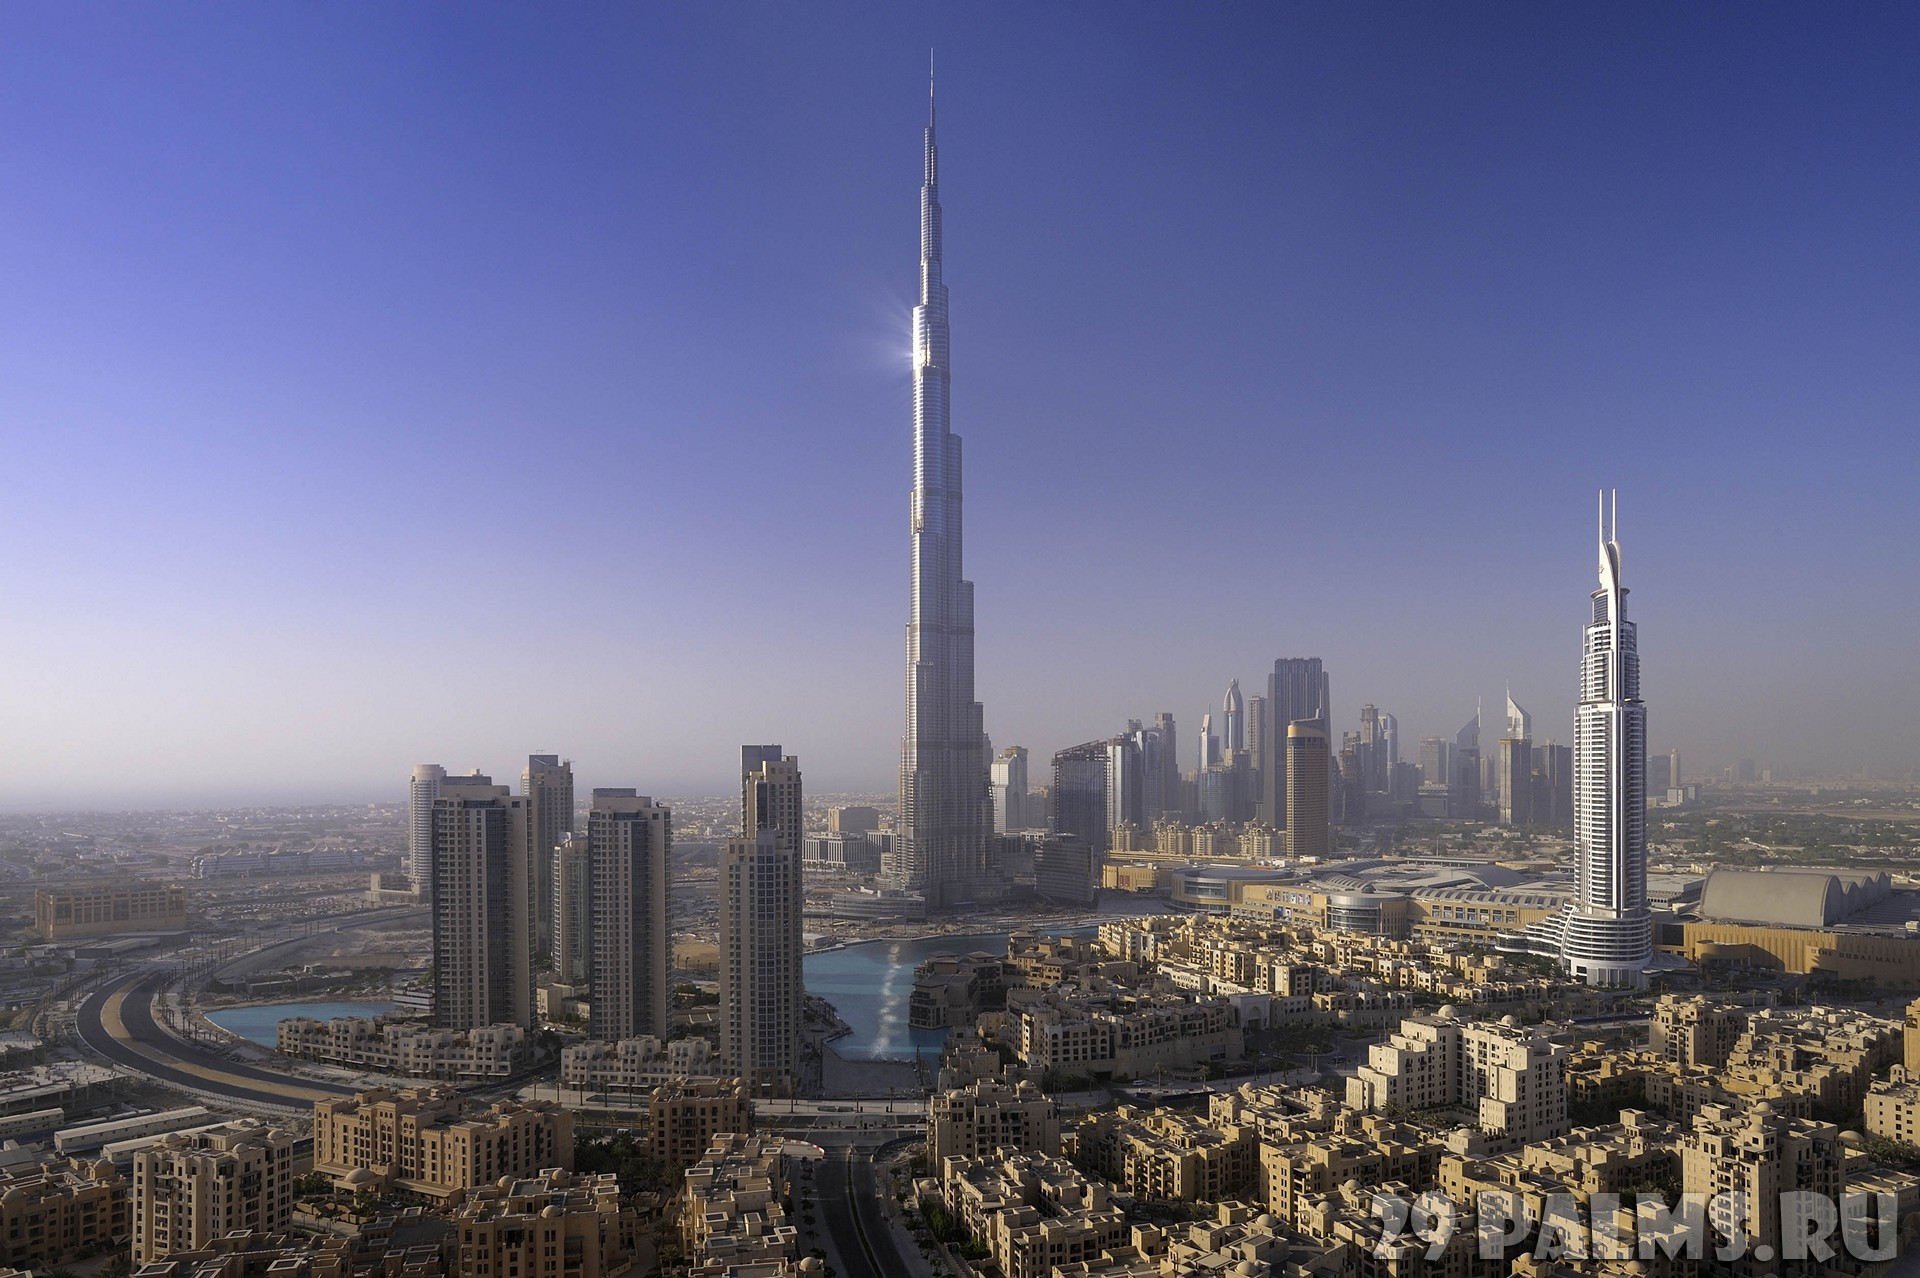 Самое высокое здание учебного заведения в мире. Башня Бурдж Халифа. Башня в ОАЭ Бурдж Халифа. Здание Бурдж Халифа. Небоскрёб Бурдж-Хали́фа (Дубай).